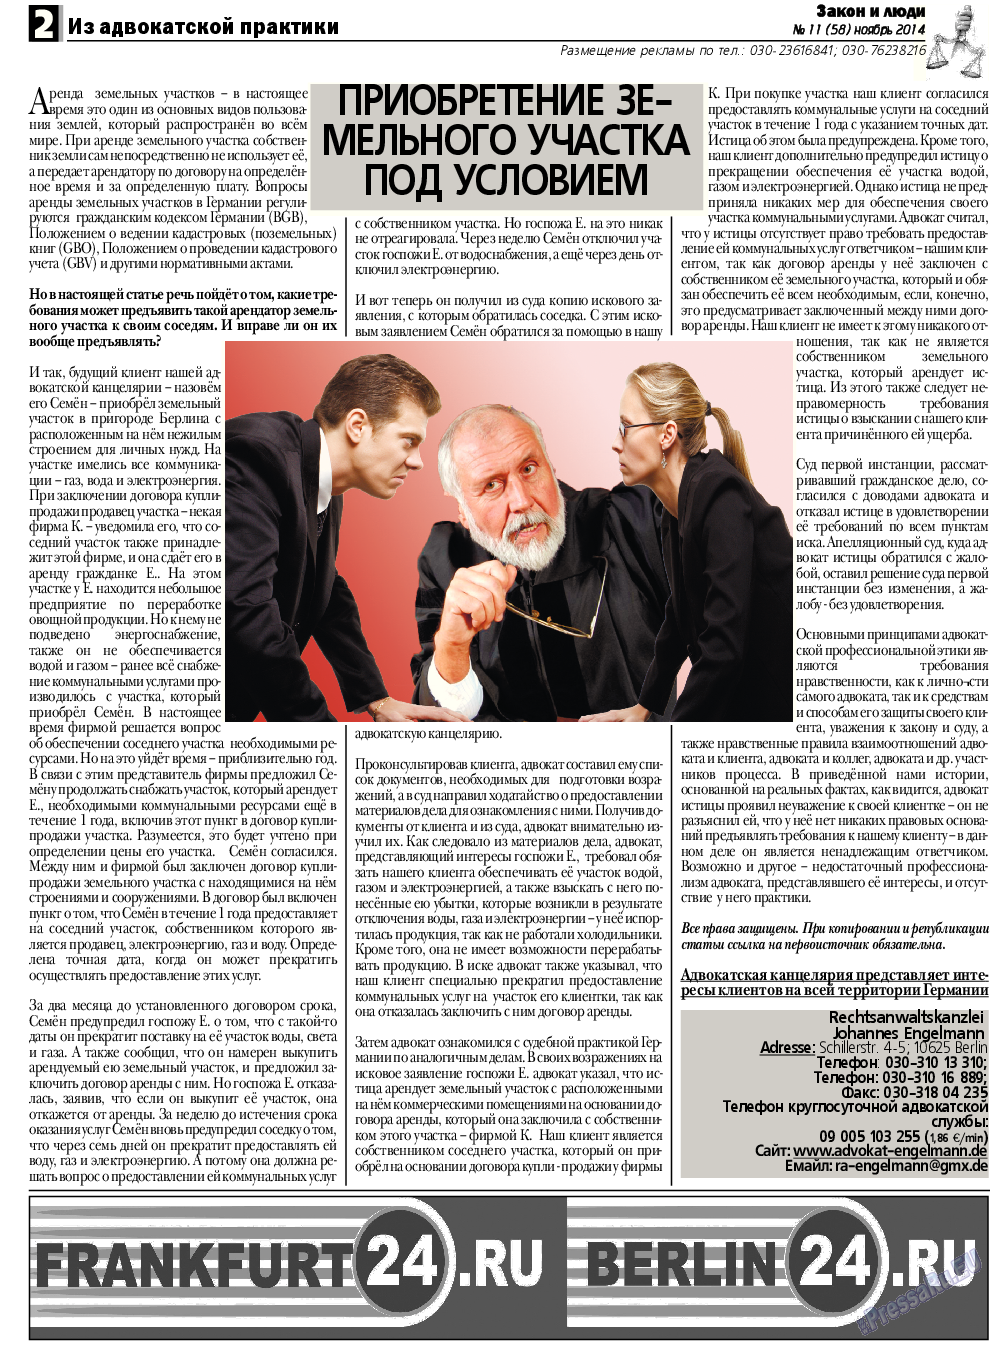 Закон и люди, газета. 2014 №11 стр.2